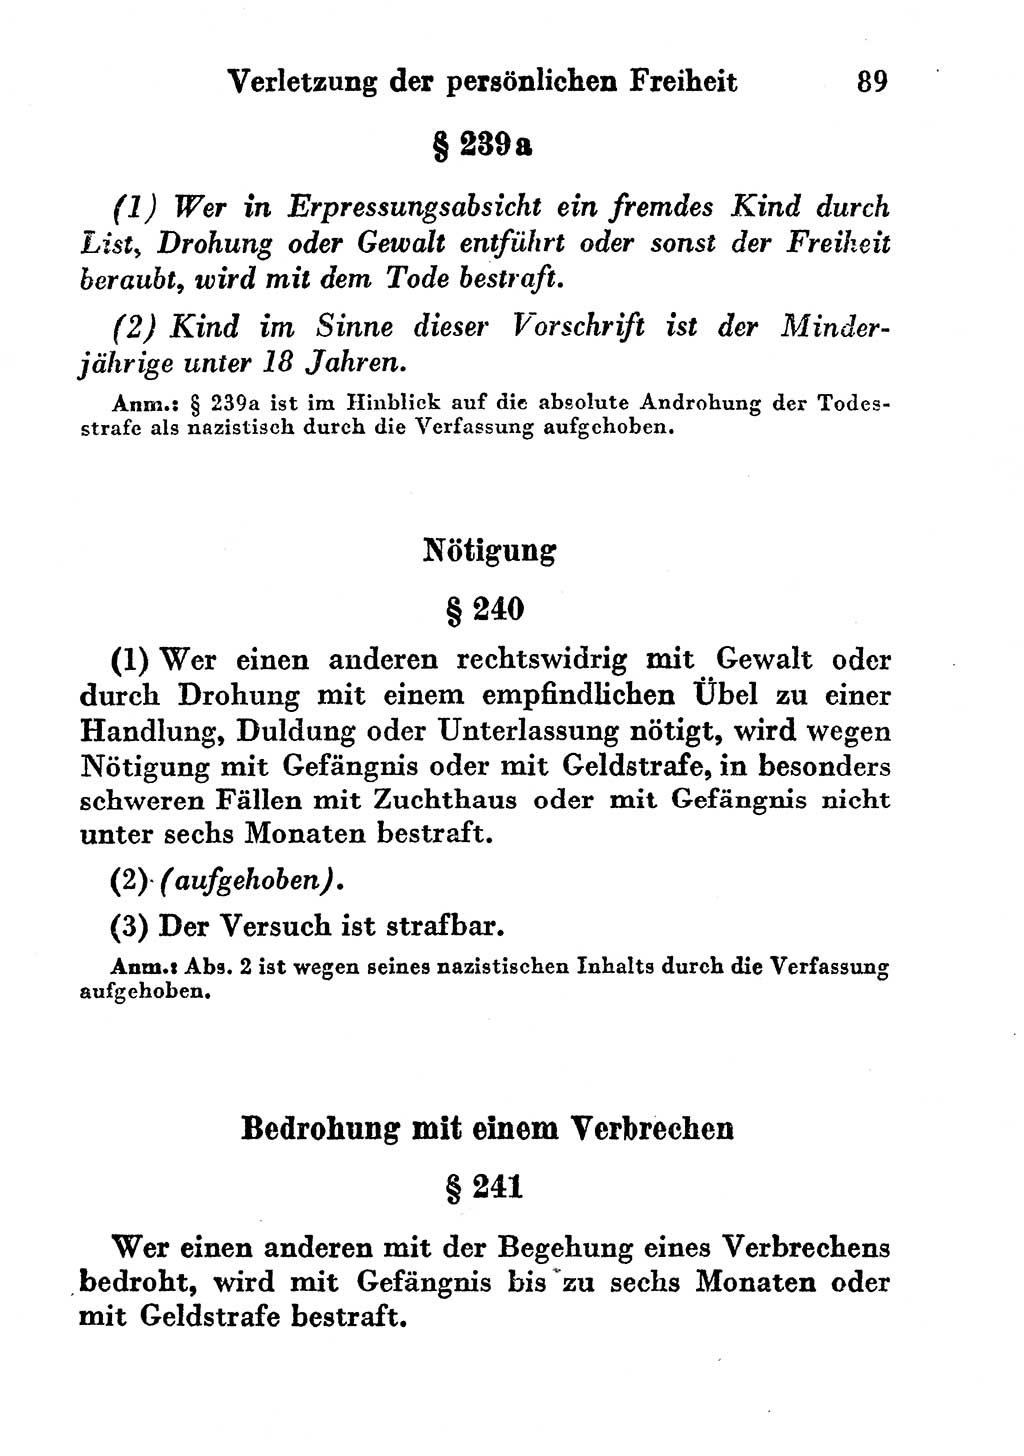 Strafgesetzbuch (StGB) und andere Strafgesetze [Deutsche Demokratische Republik (DDR)] 1956, Seite 89 (StGB Strafges. DDR 1956, S. 89)